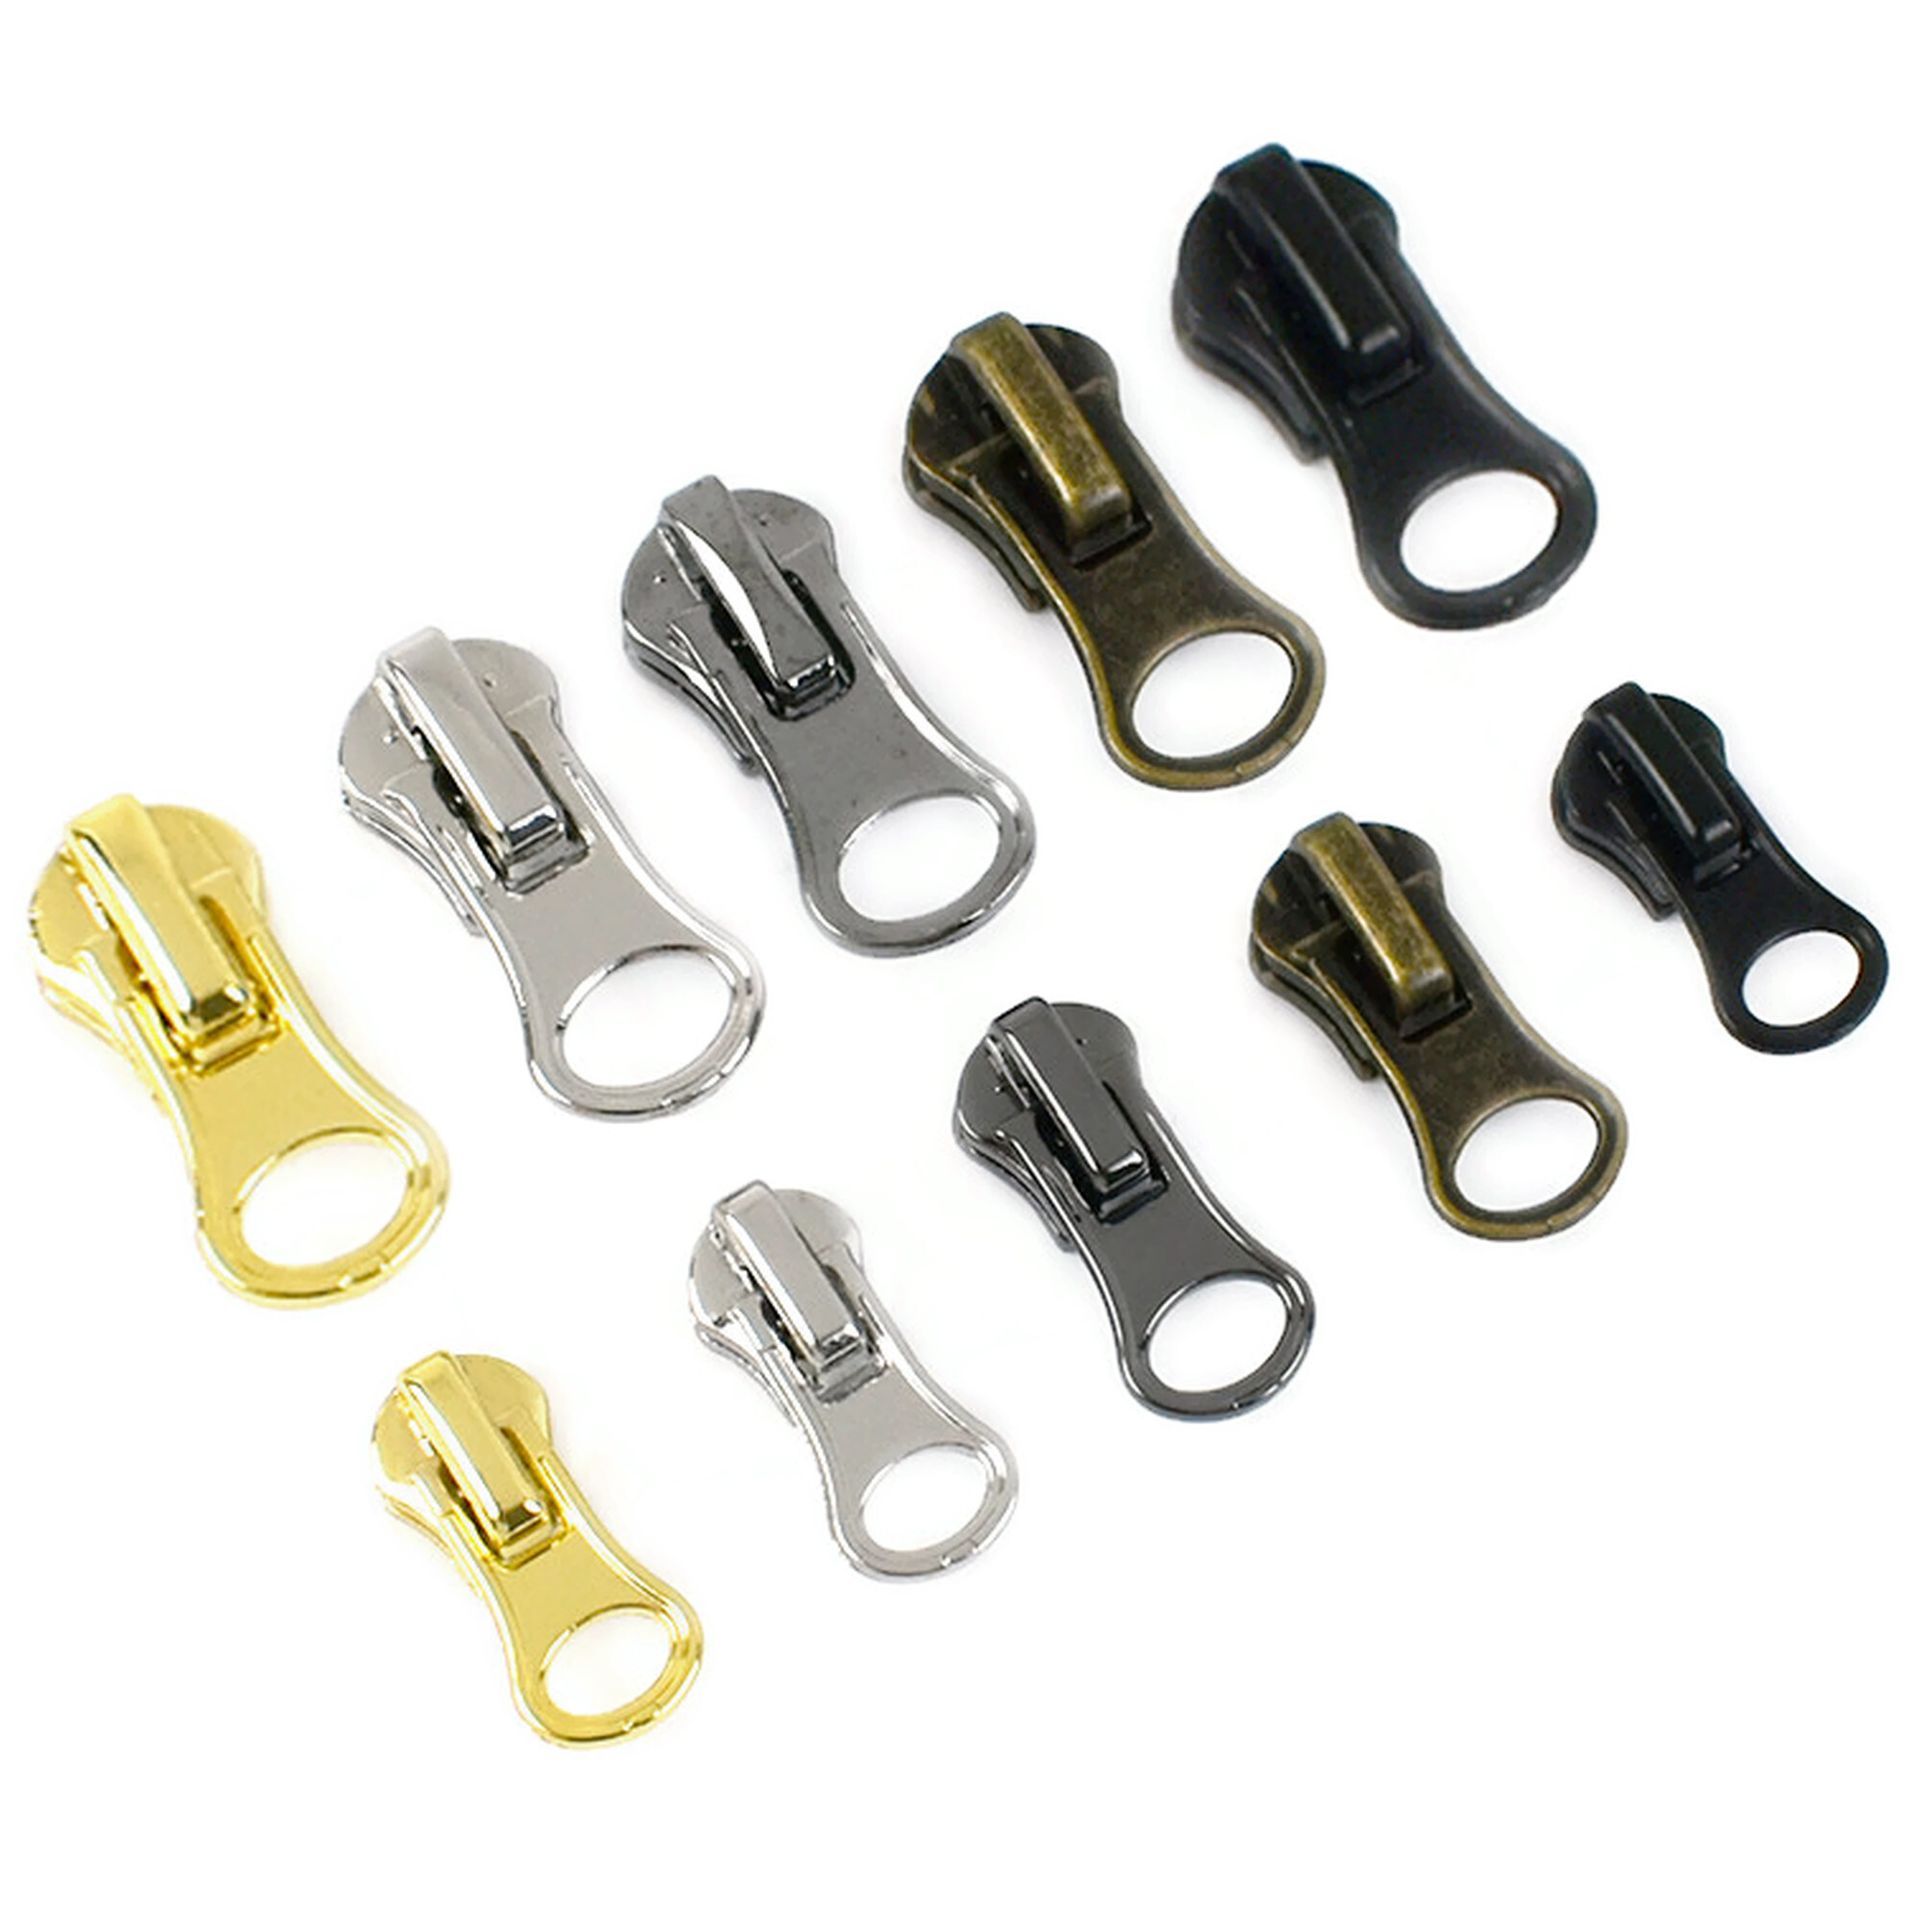 8 Pieces Zipper Pull Replacement Zipper Repair Kit Zipper Slider